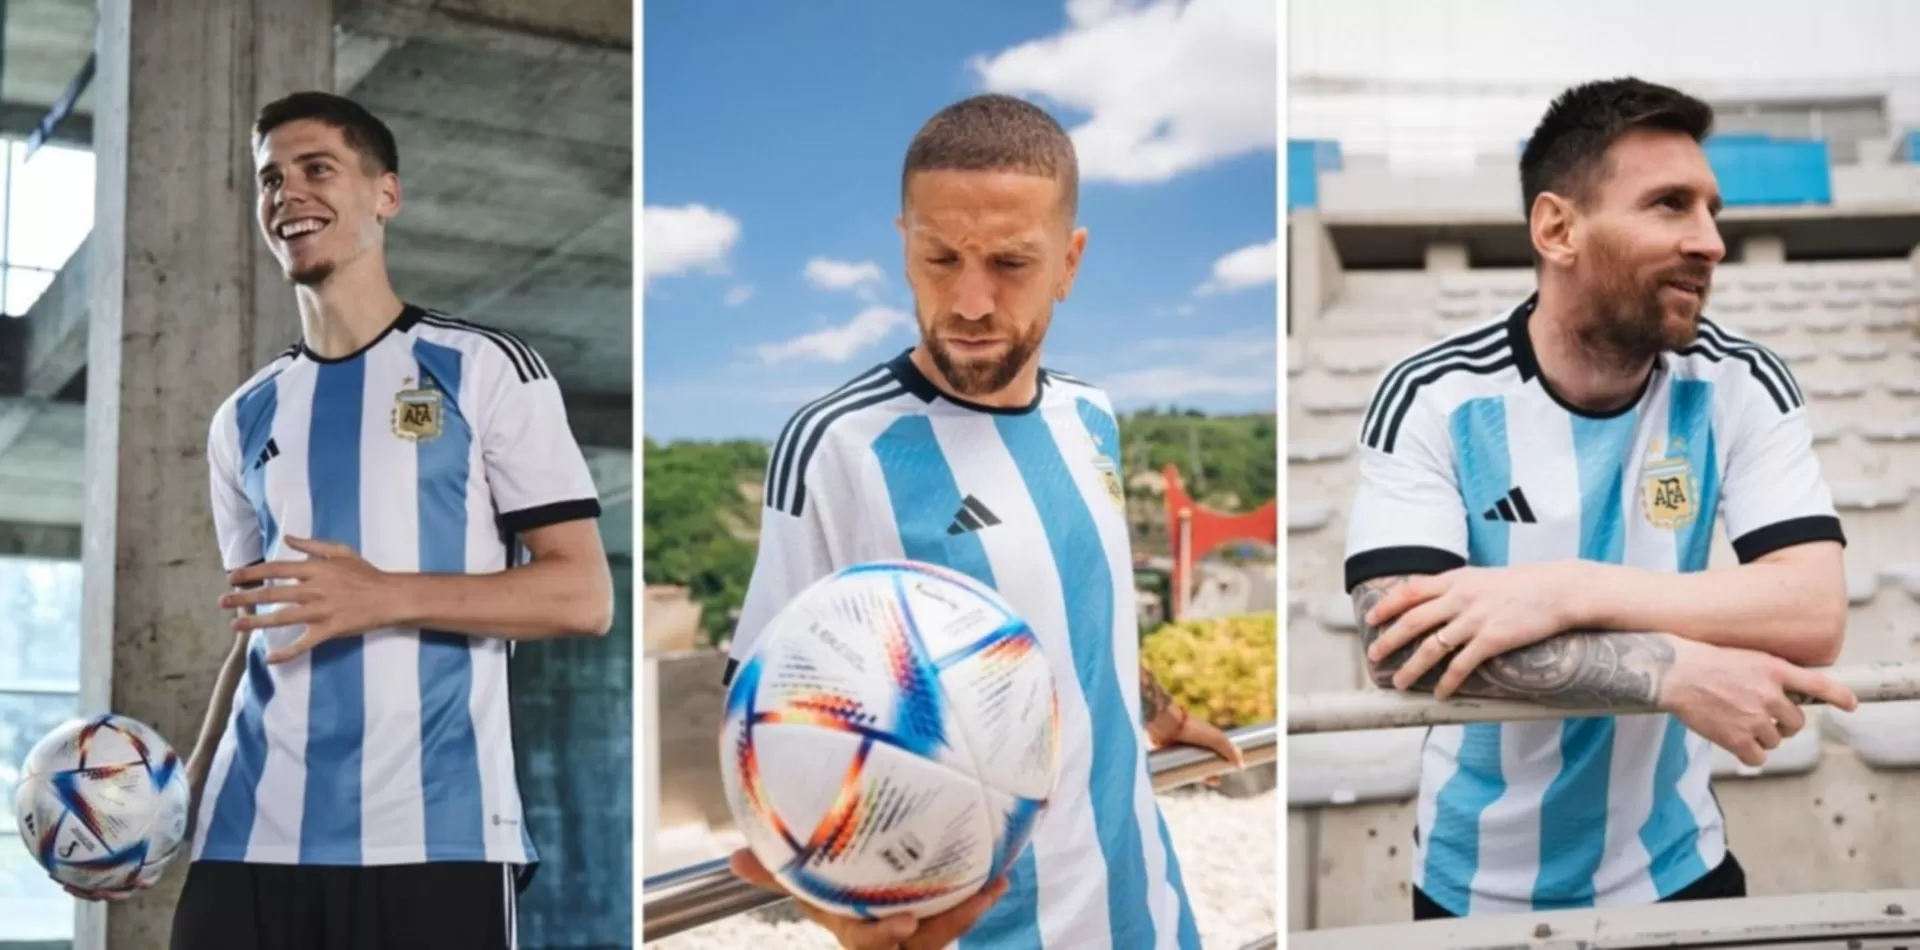 Conexión Línea del sitio Edredón Cuánto cuesta la ropa mundialista de la Selección argentina?